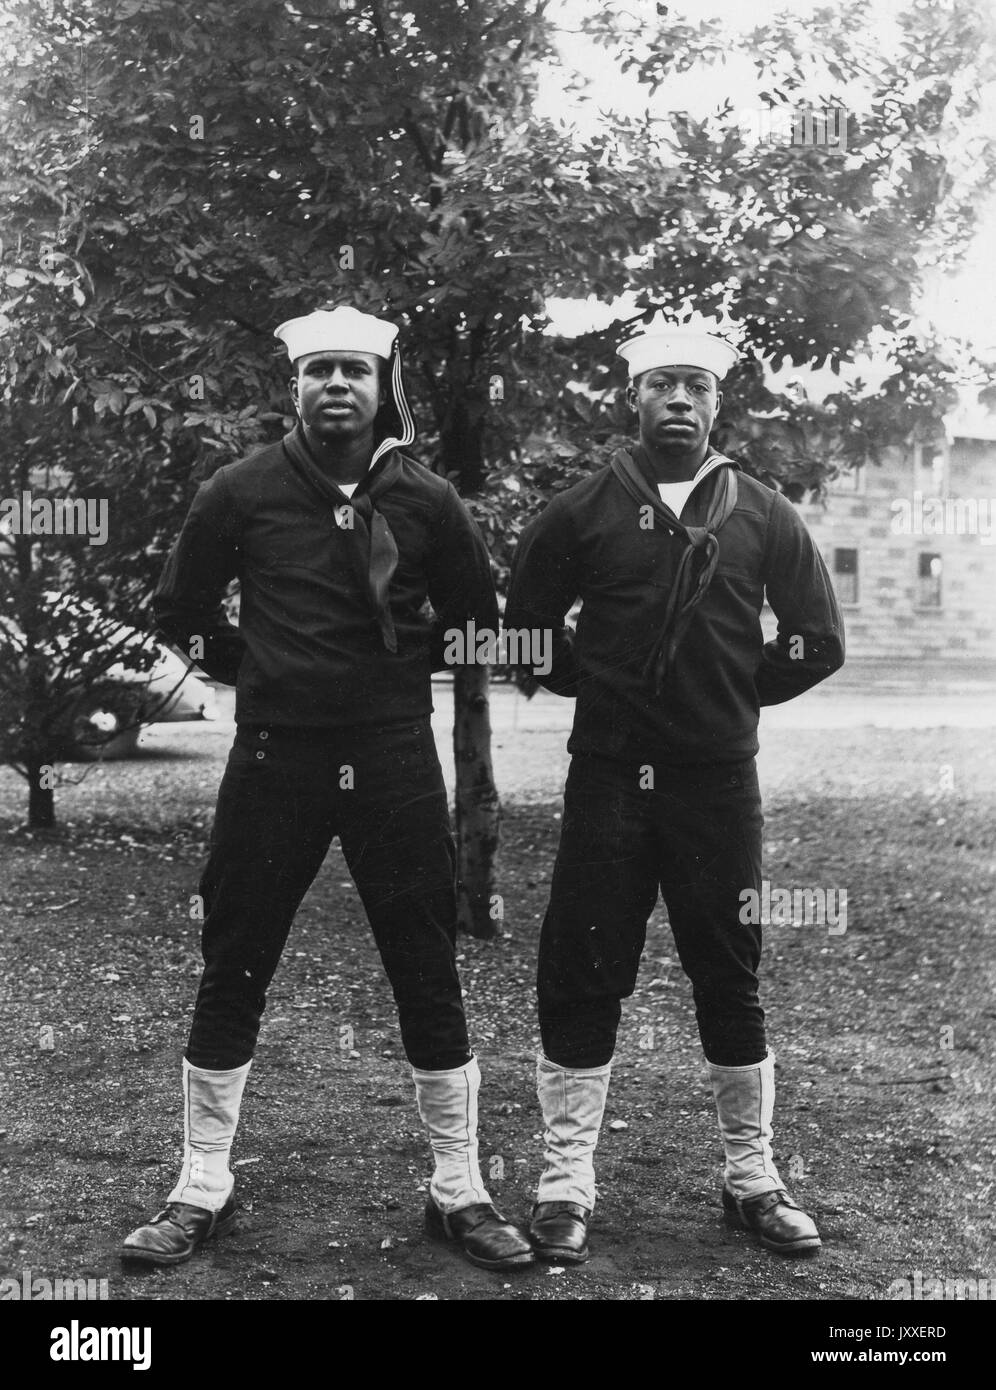 Porträt zweier afroamerikanischer US Navy-Matrosen, die vor einem Baum stehen, beide tragen dunkelfarbige Sailor-Uniformen und helle Sailor-Hüte, beide haben gebeugte Arme und hinter dem Rücken, 1920. Stockfoto